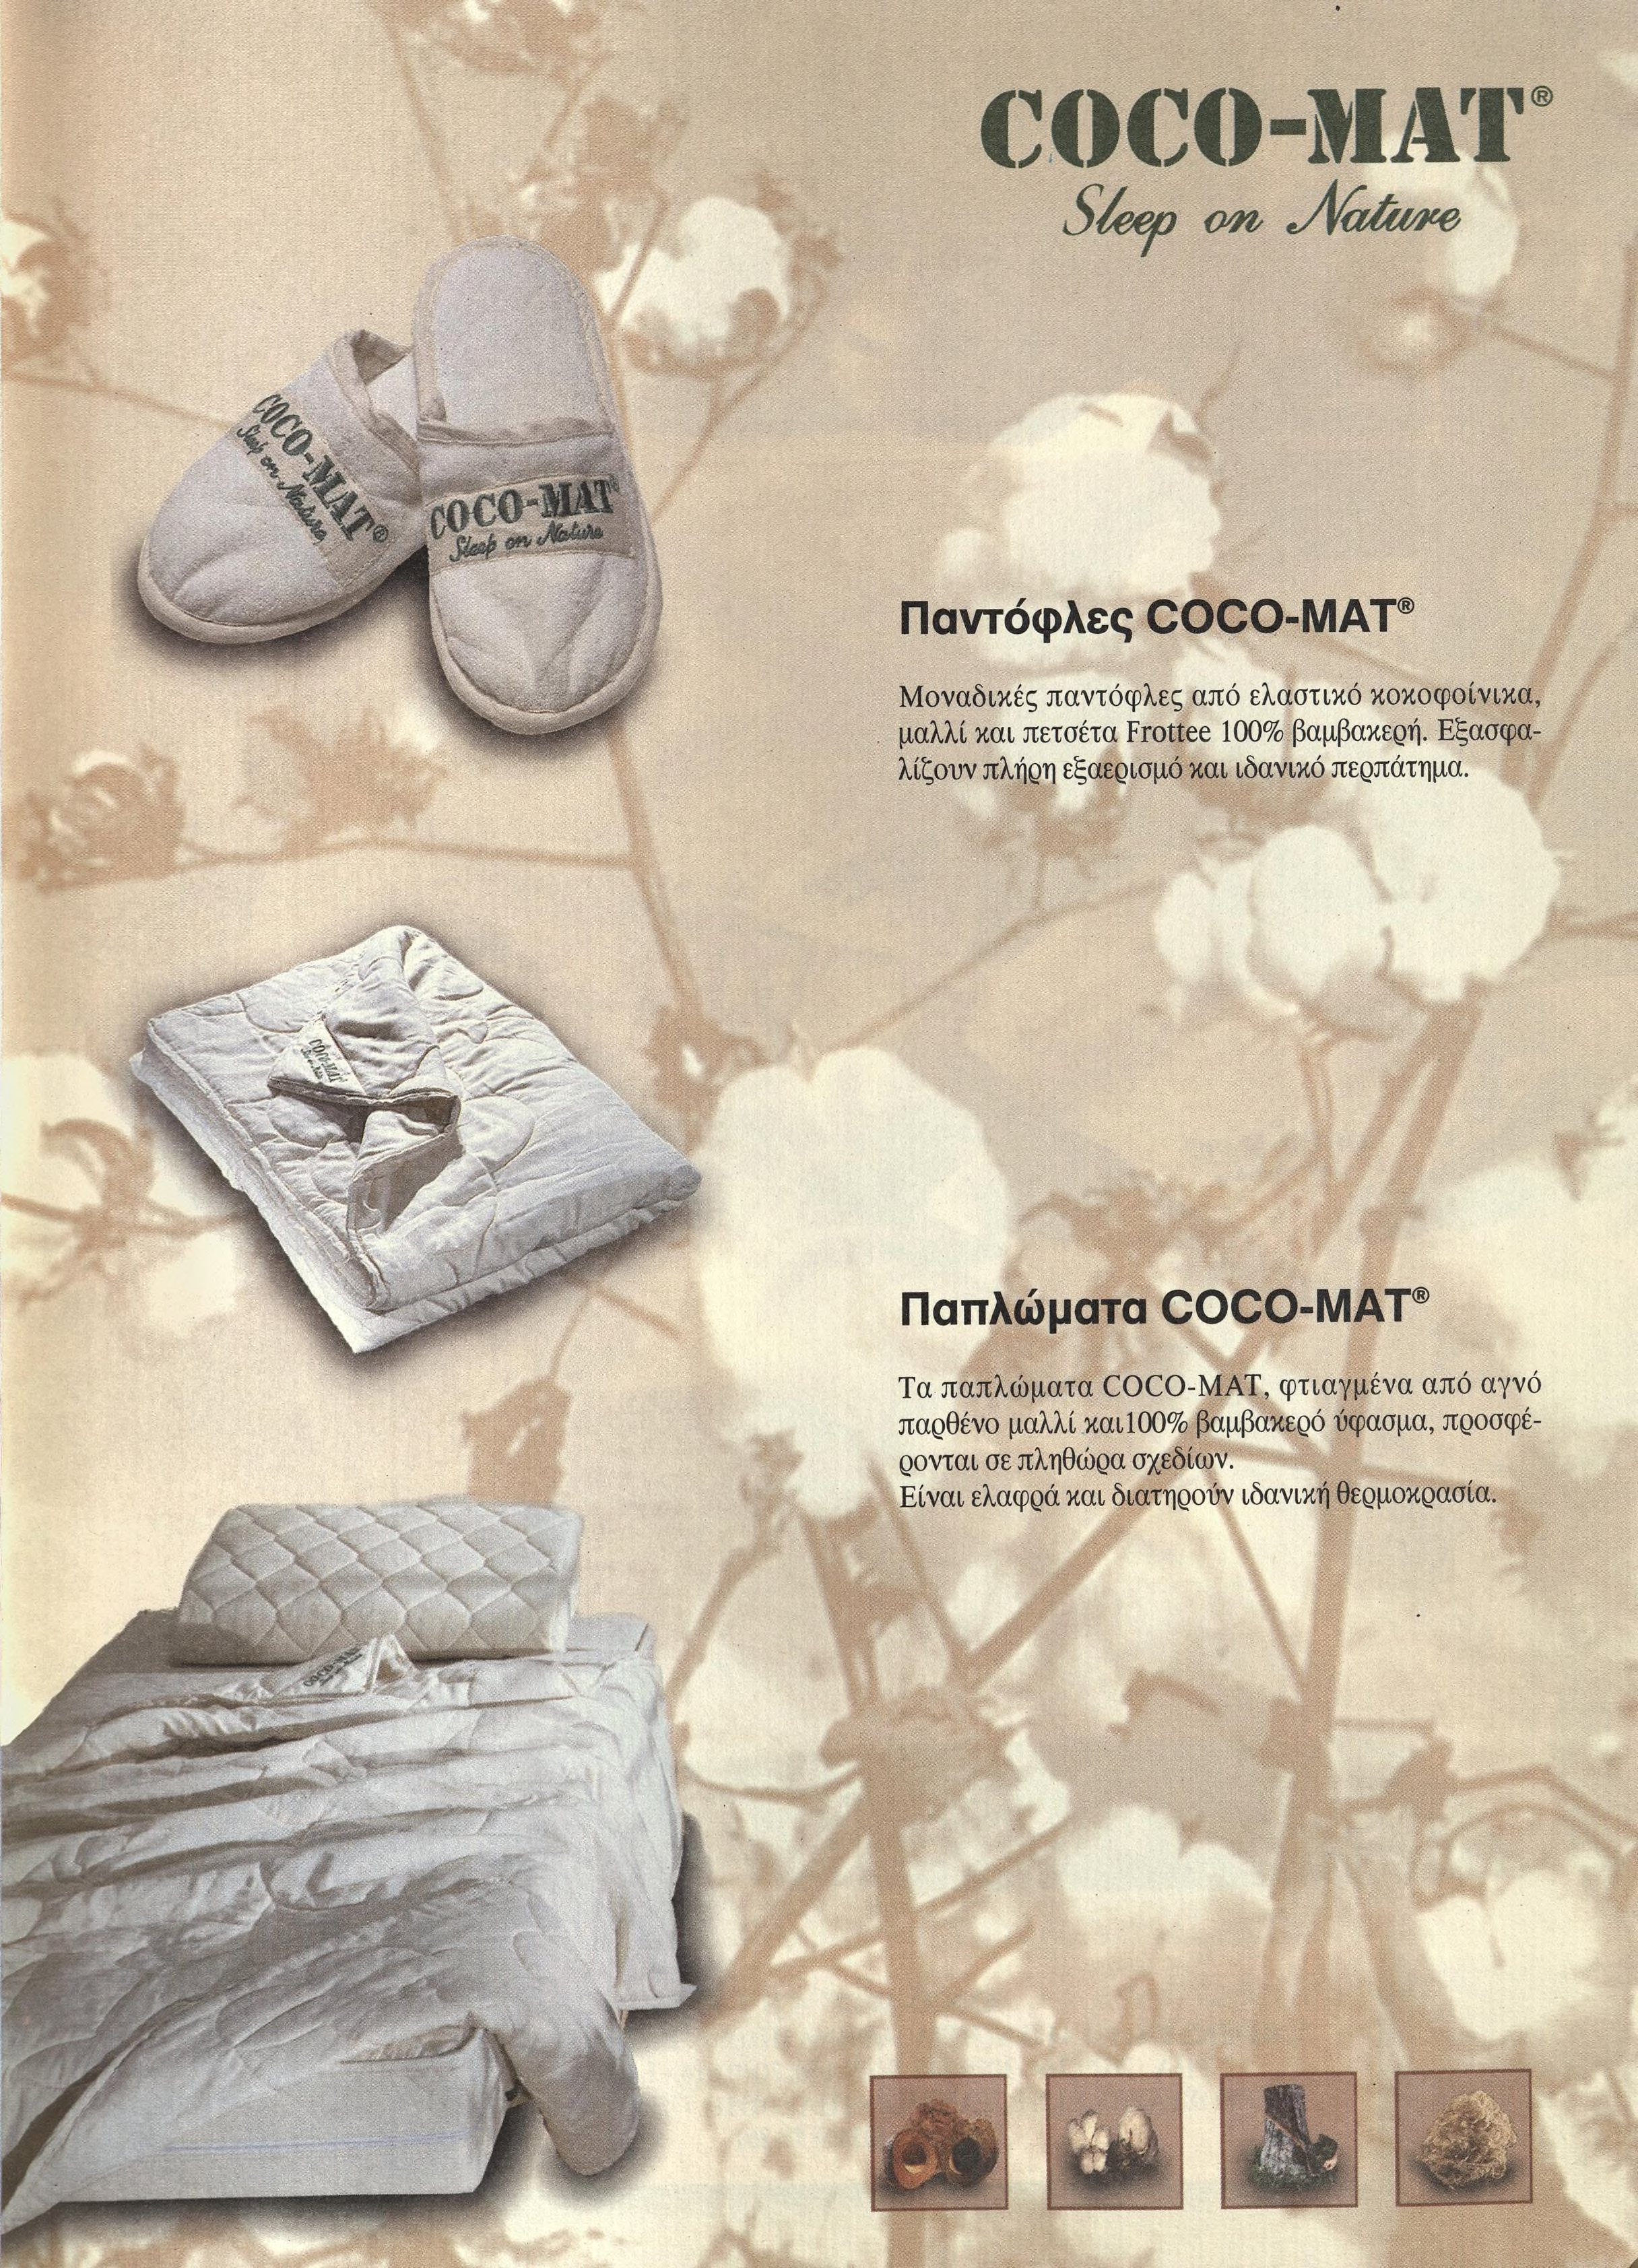 Παντόφλες COCO-MAT Μοναδικές παντόφλες από ελαστικό χοχοφοίνιχα, μαλλί χαι πετσέτα Frottee 100% βαμβακερή. Εξασφα λίζουν πλήρη εξαεριαμό χαι ιδανικό περπάτημα.